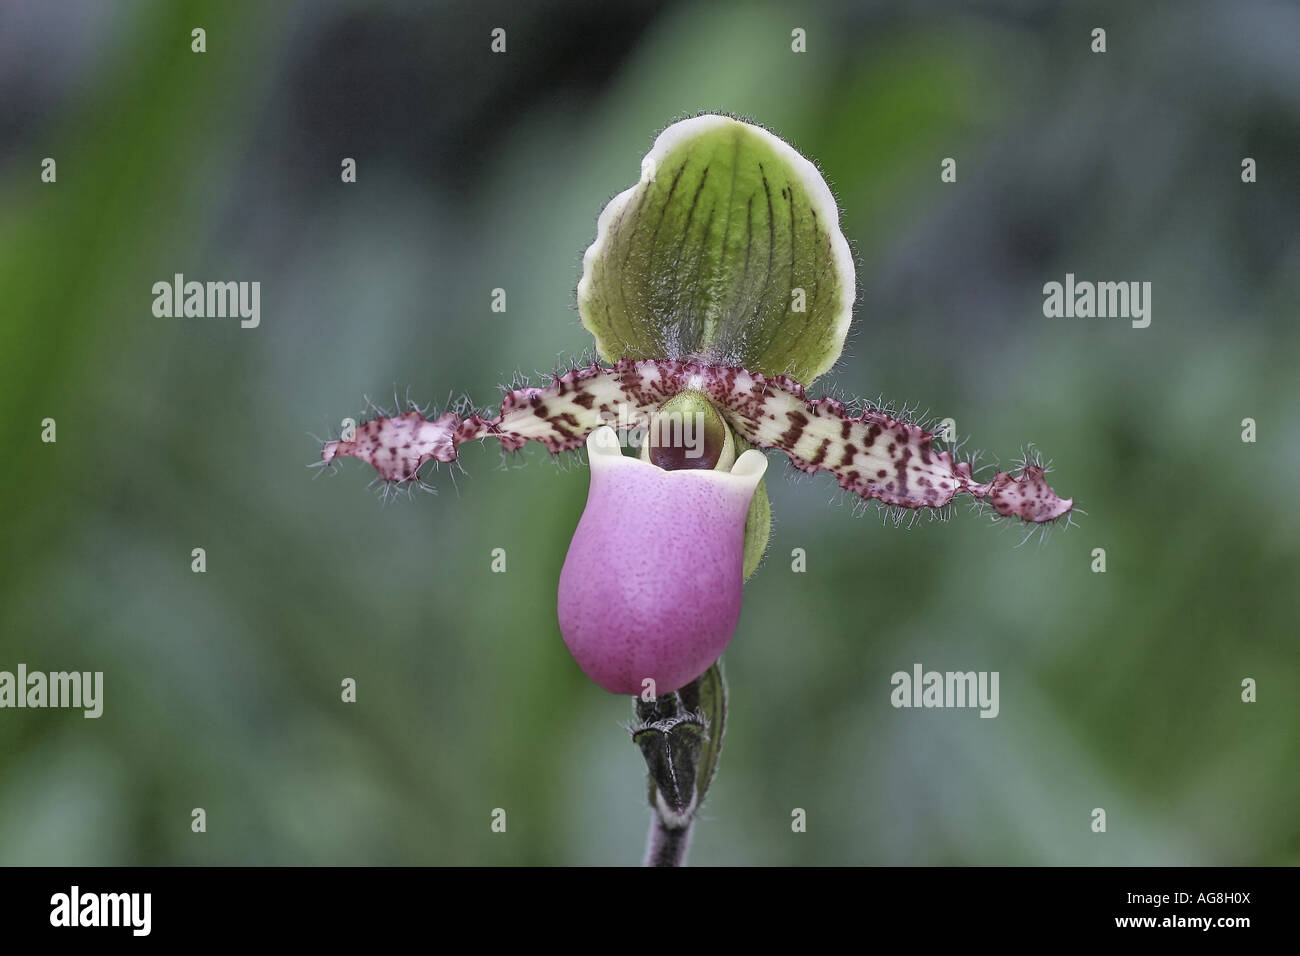 lady's slipper orchid (Paphiopedilum glaucophyllum), flower Stock Photo